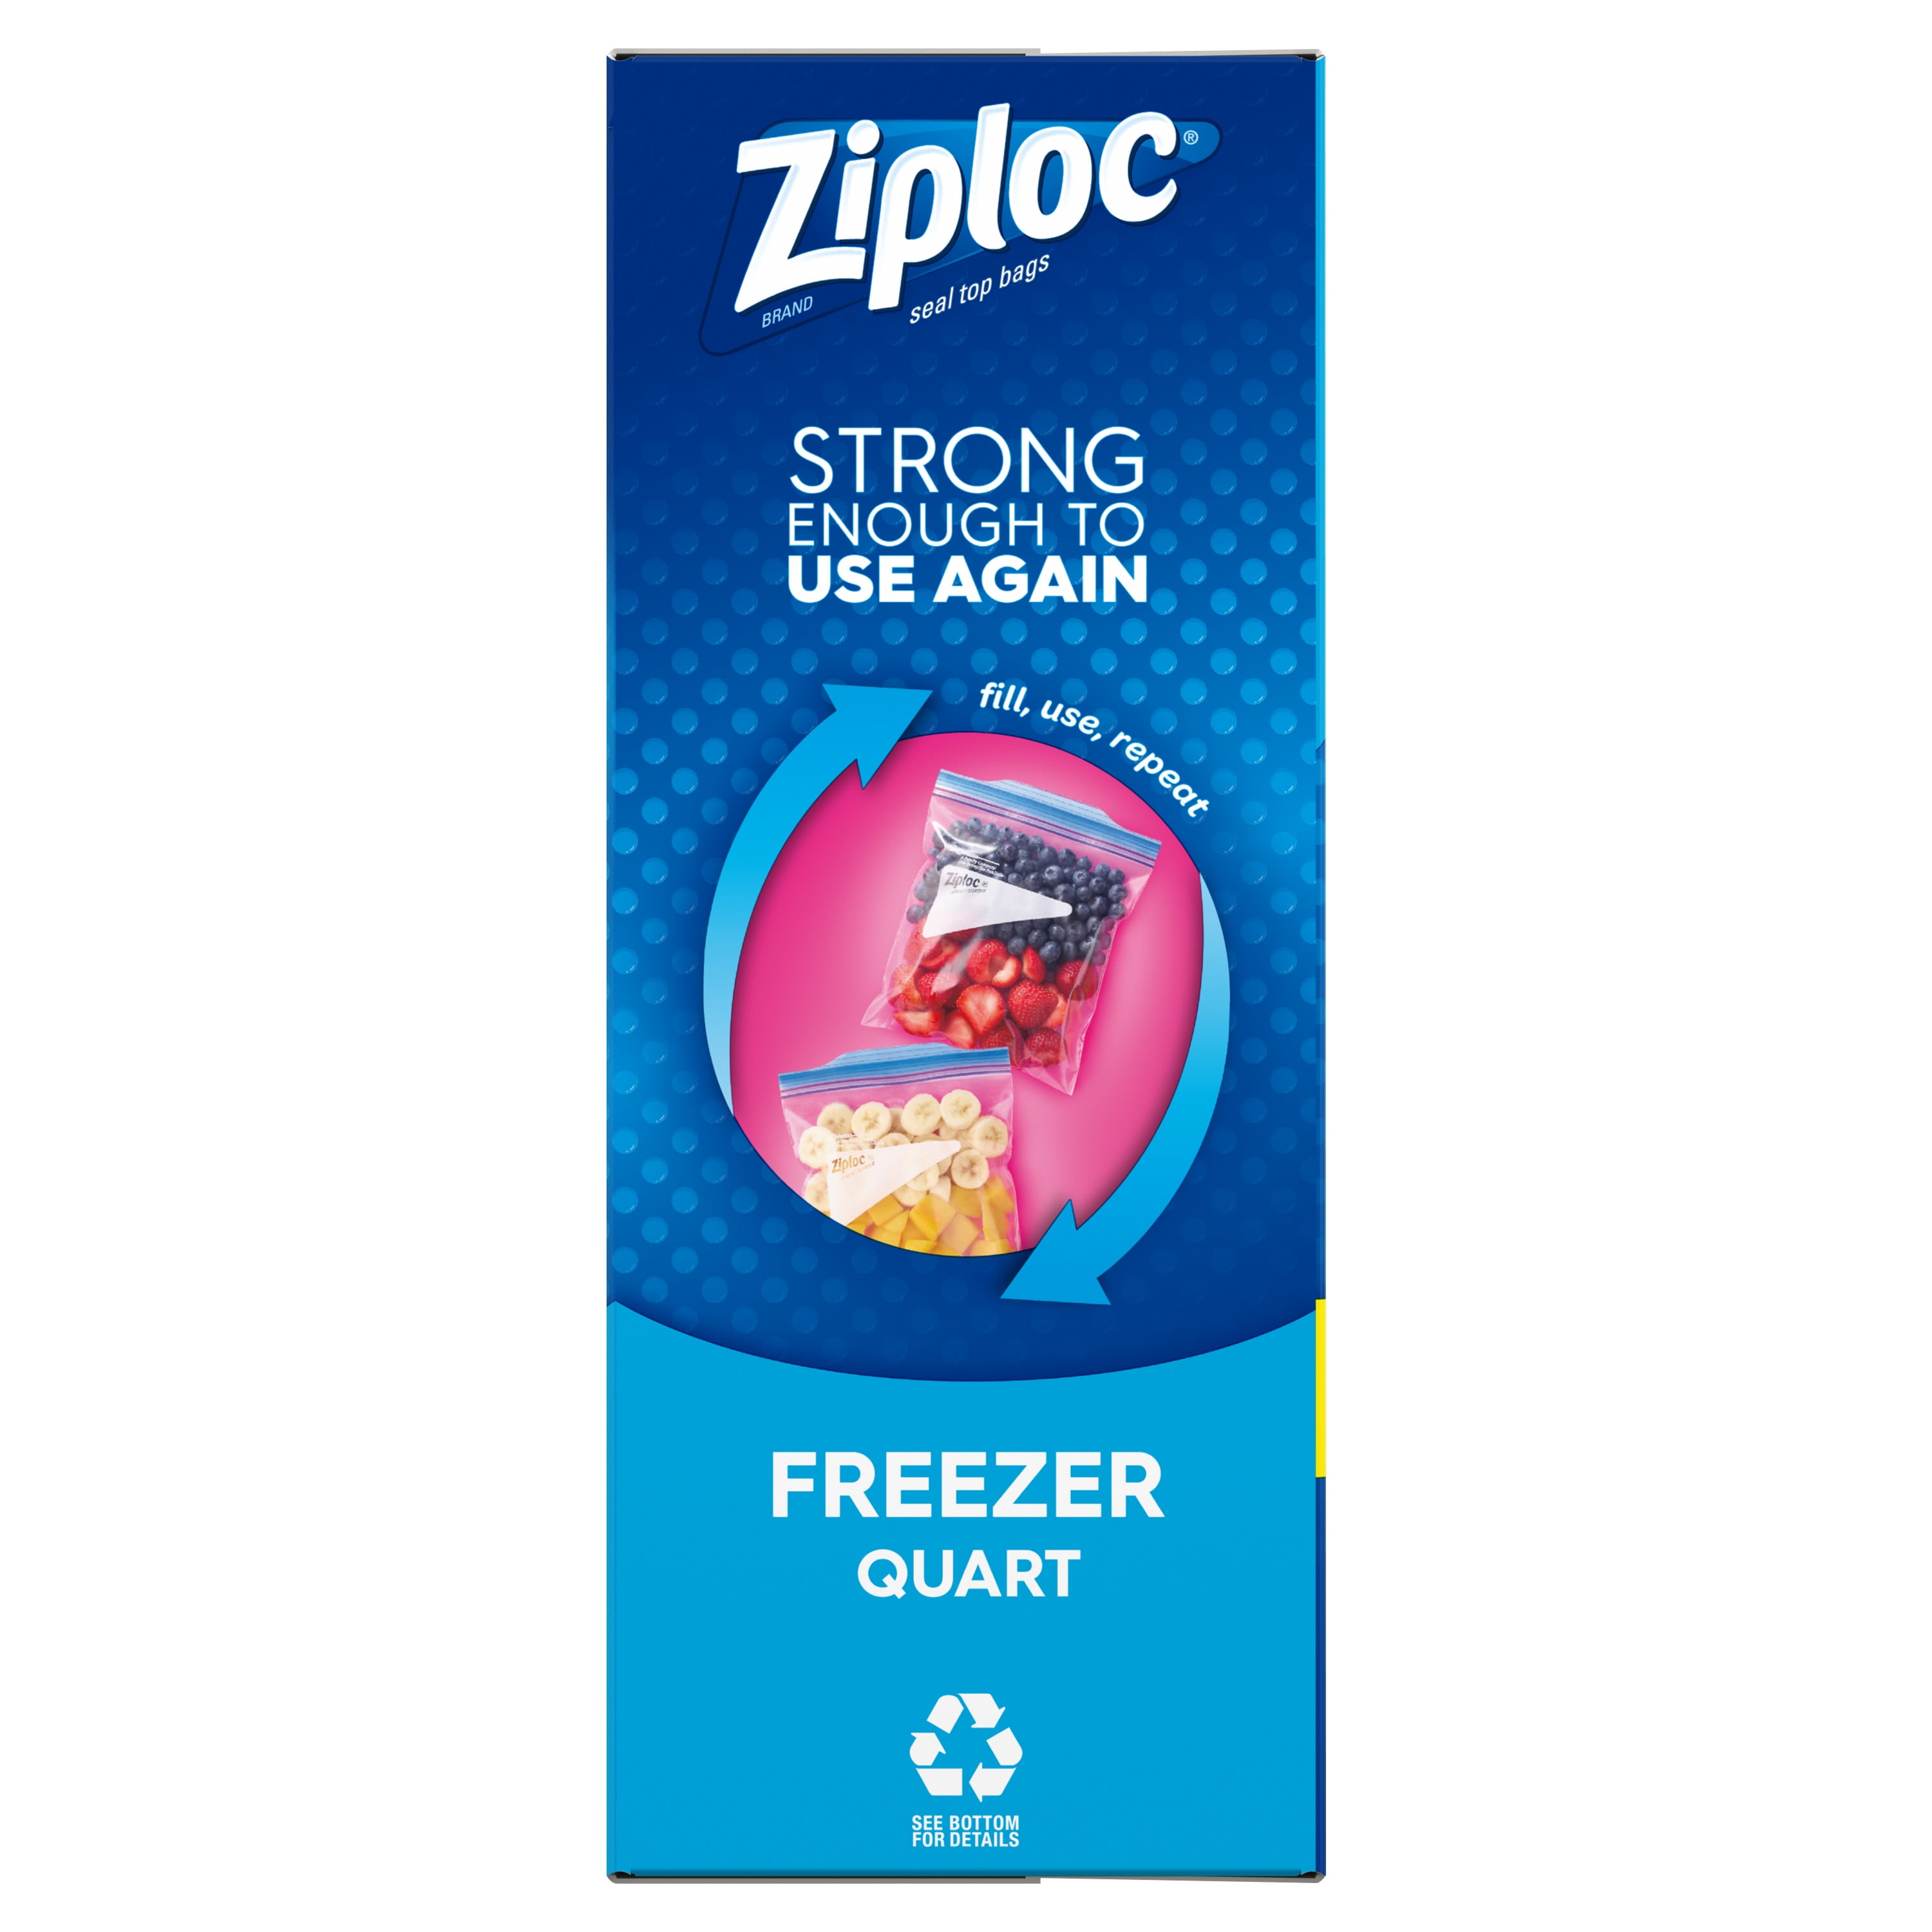 Ziploc Double Zipper Freezer Bags - 38 count